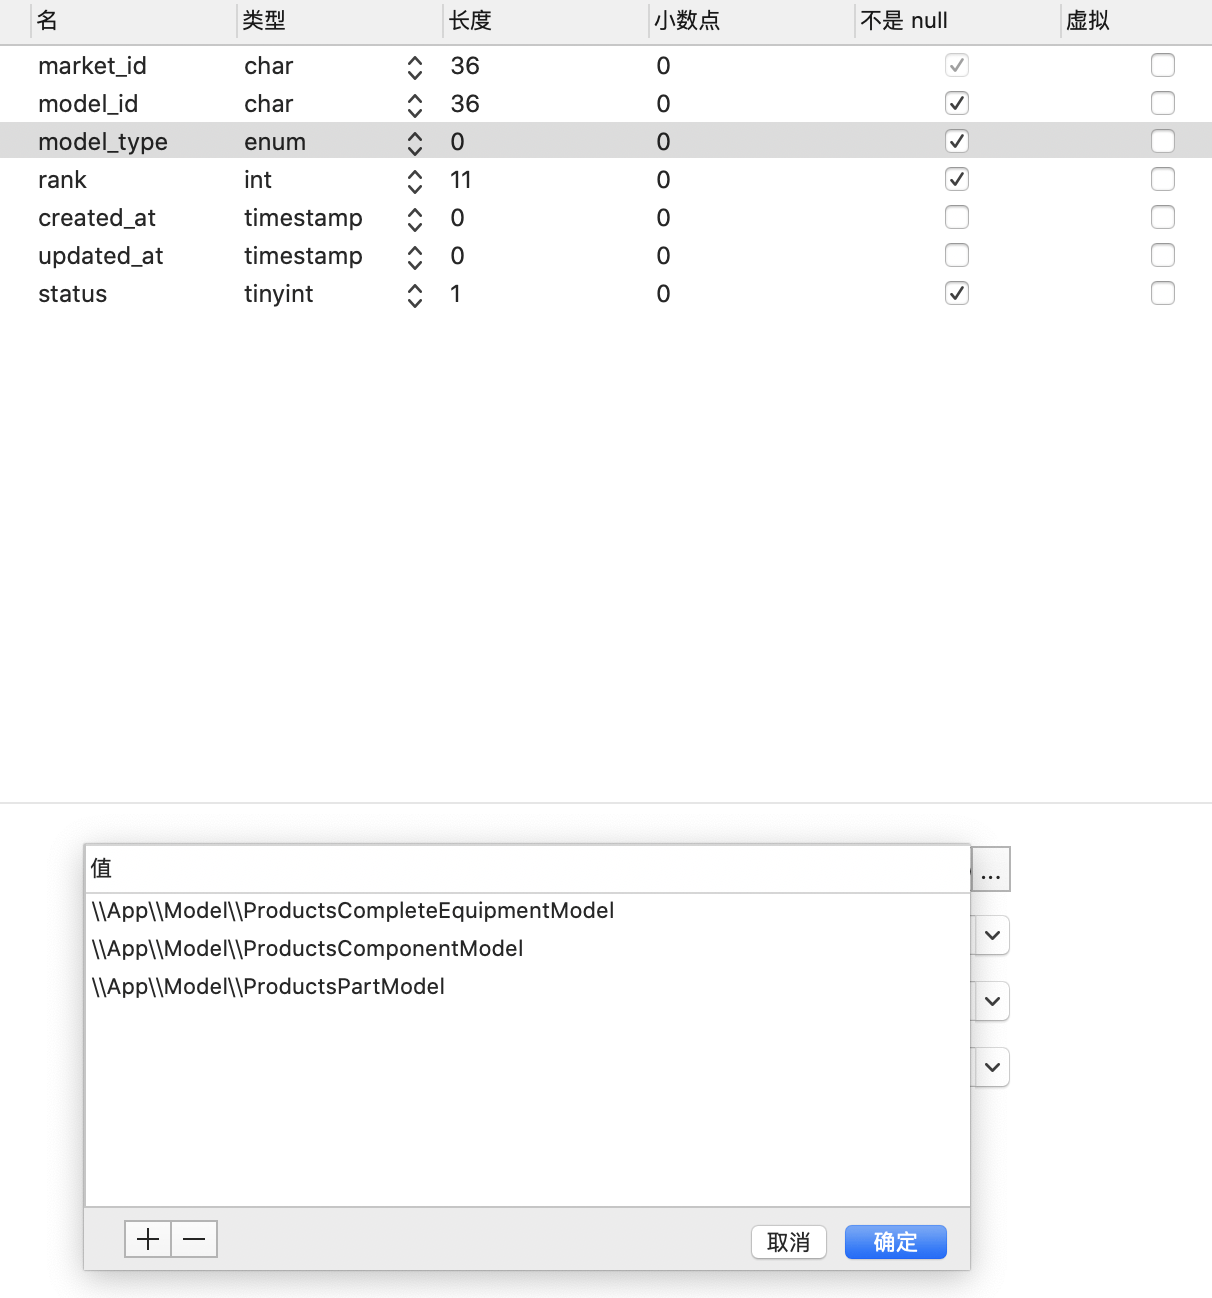 【求助】Laravel 5.8 数据库迁移中，如果字段包含 "\" 反斜杠时，无法正确迁移字段